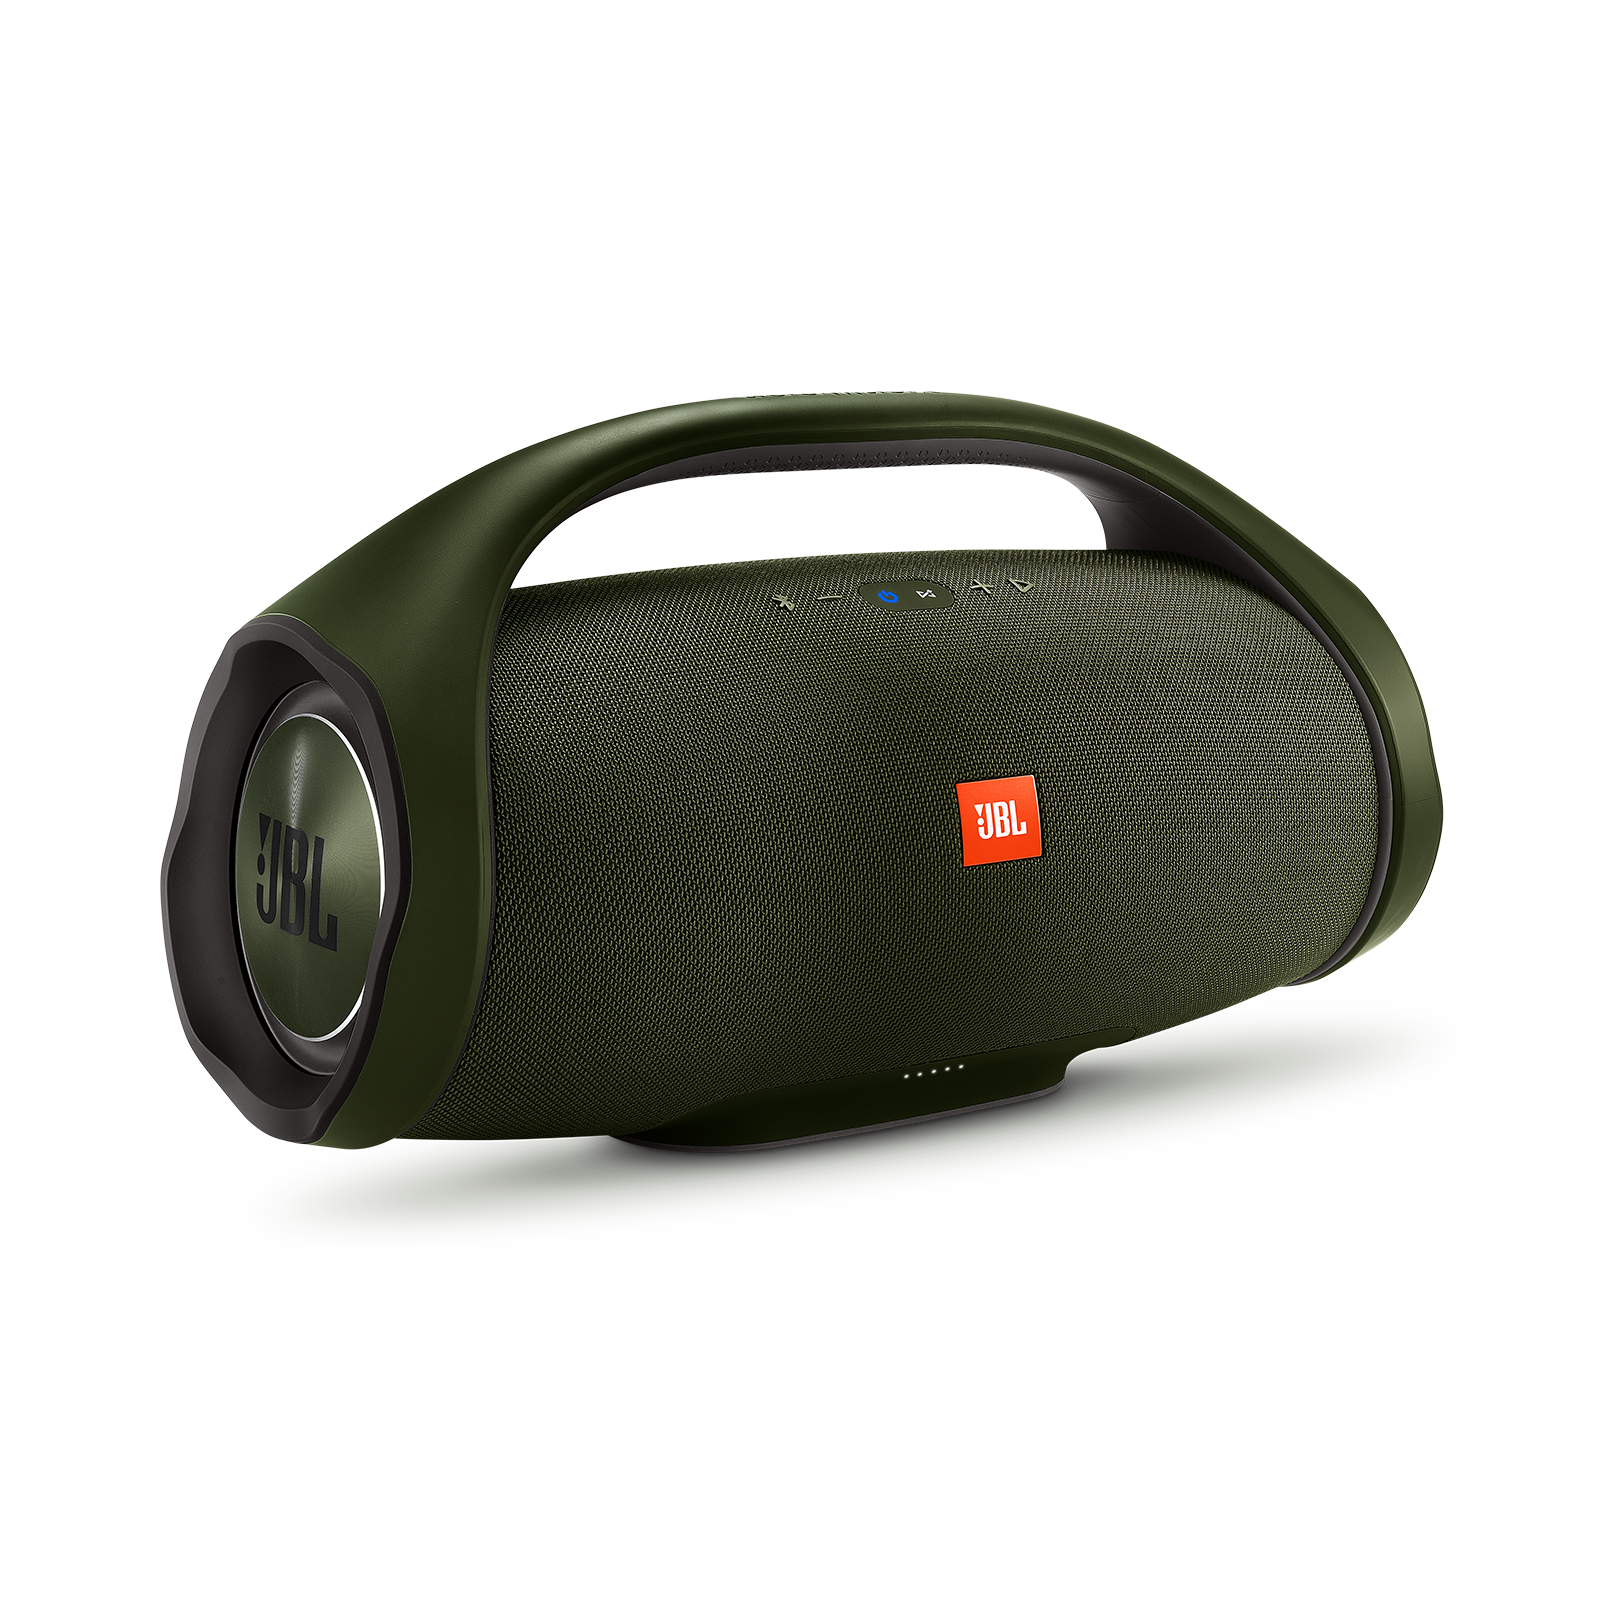 boom speaker price